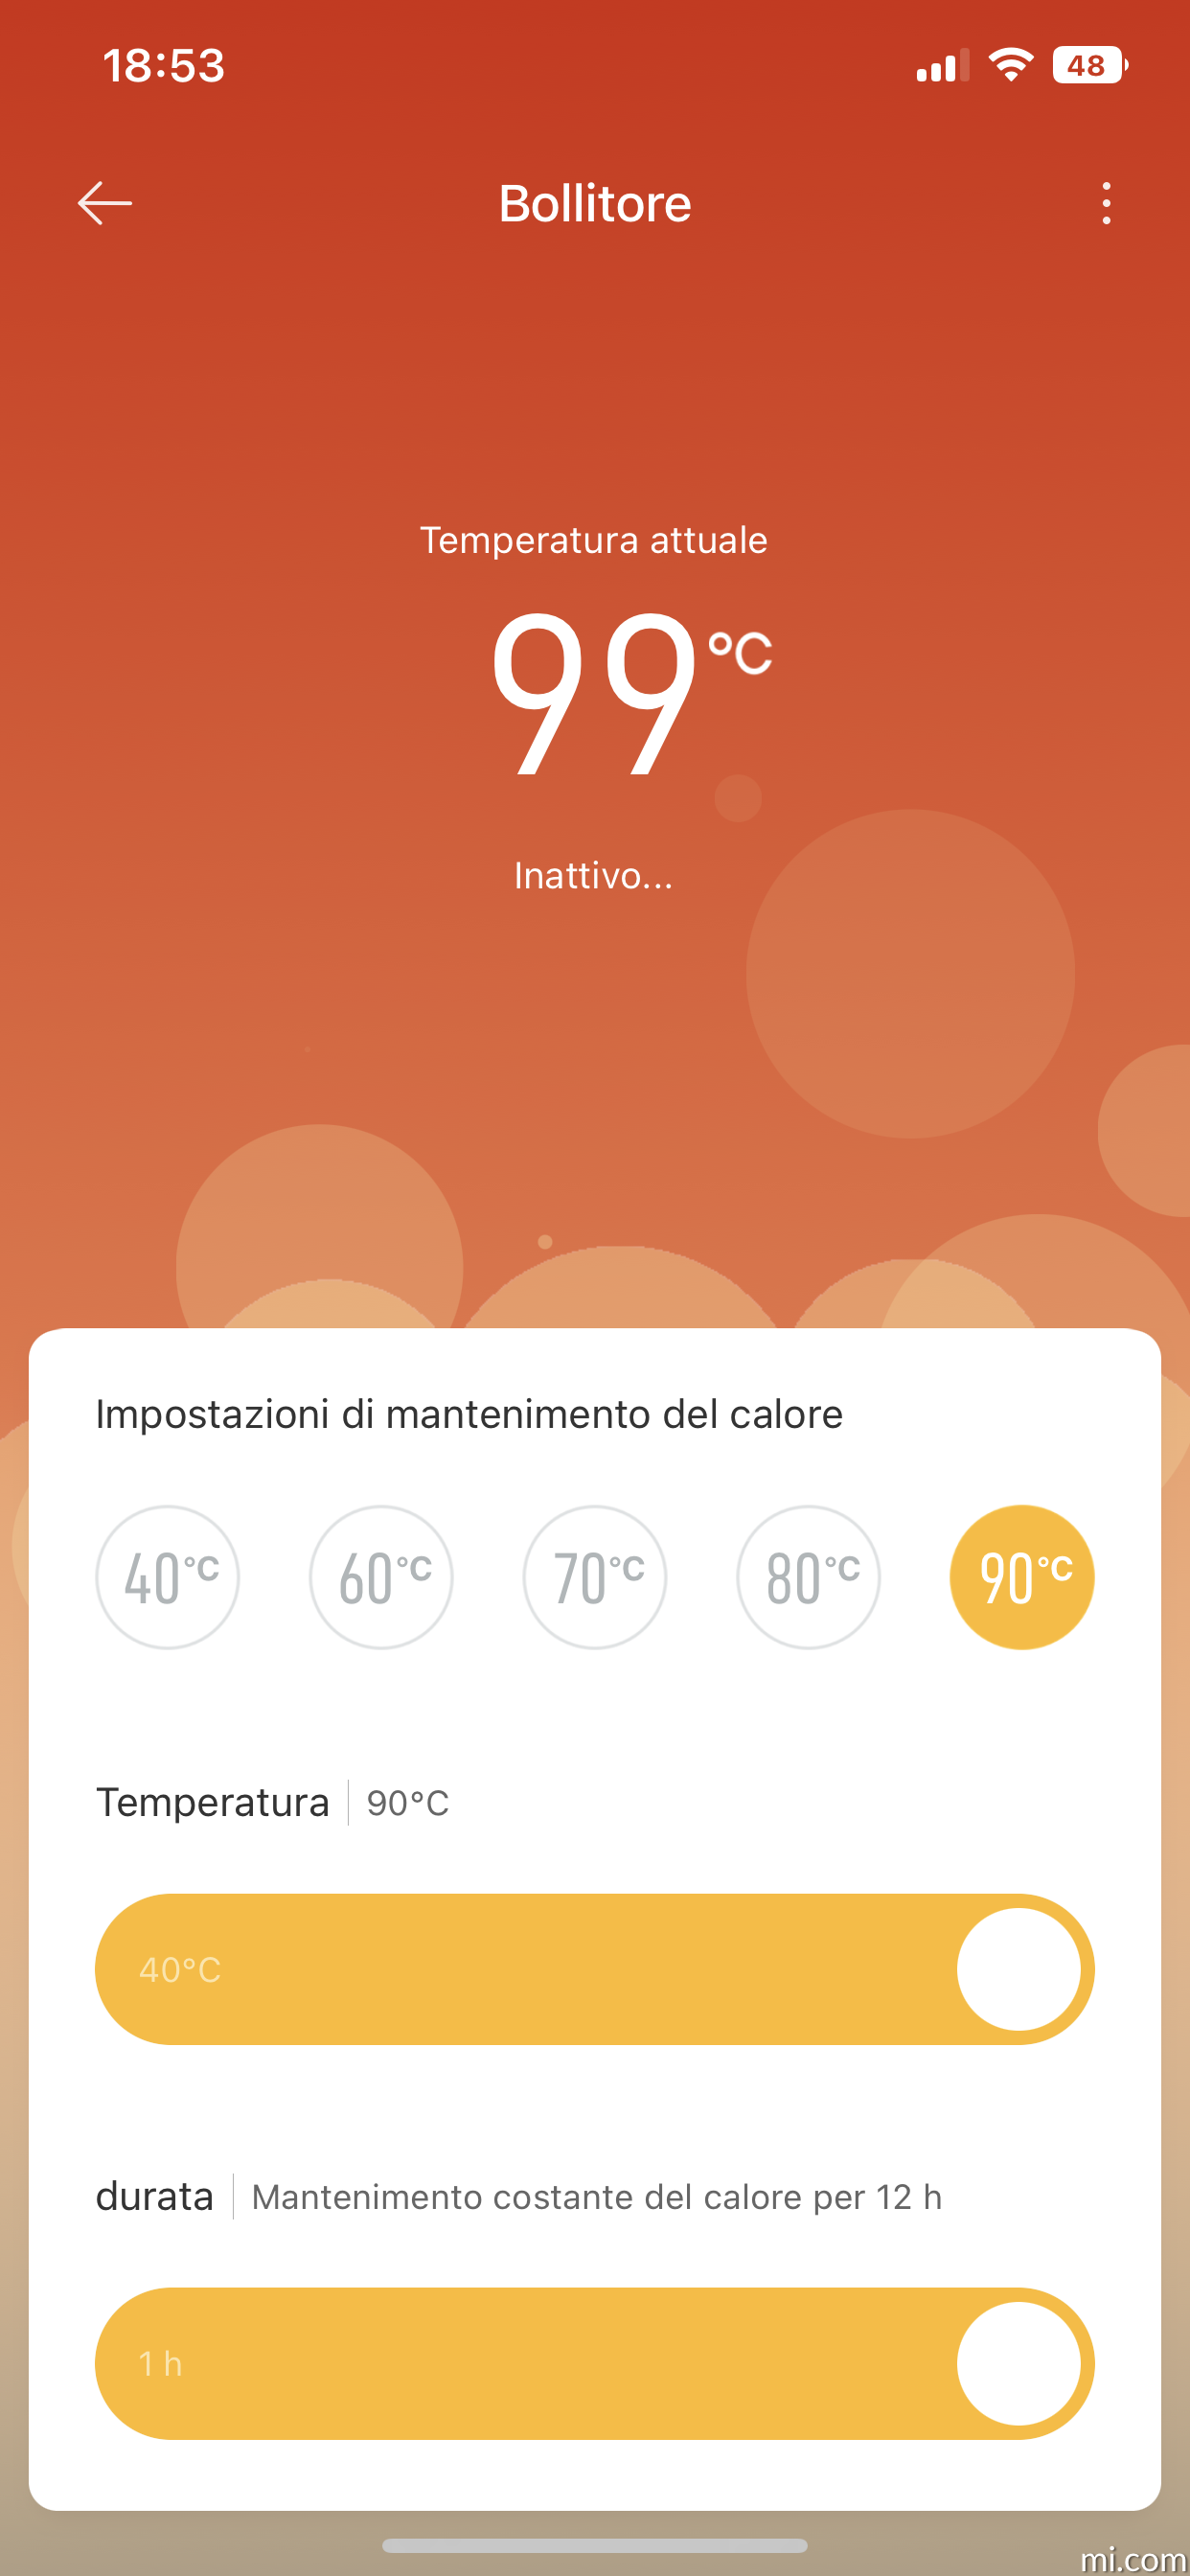 Xiaomi Mi Bollitore Vetro Elettrico Nero UE BHR7423EU - Slovacchia, Nuova -  Piattaforma all'ingrosso